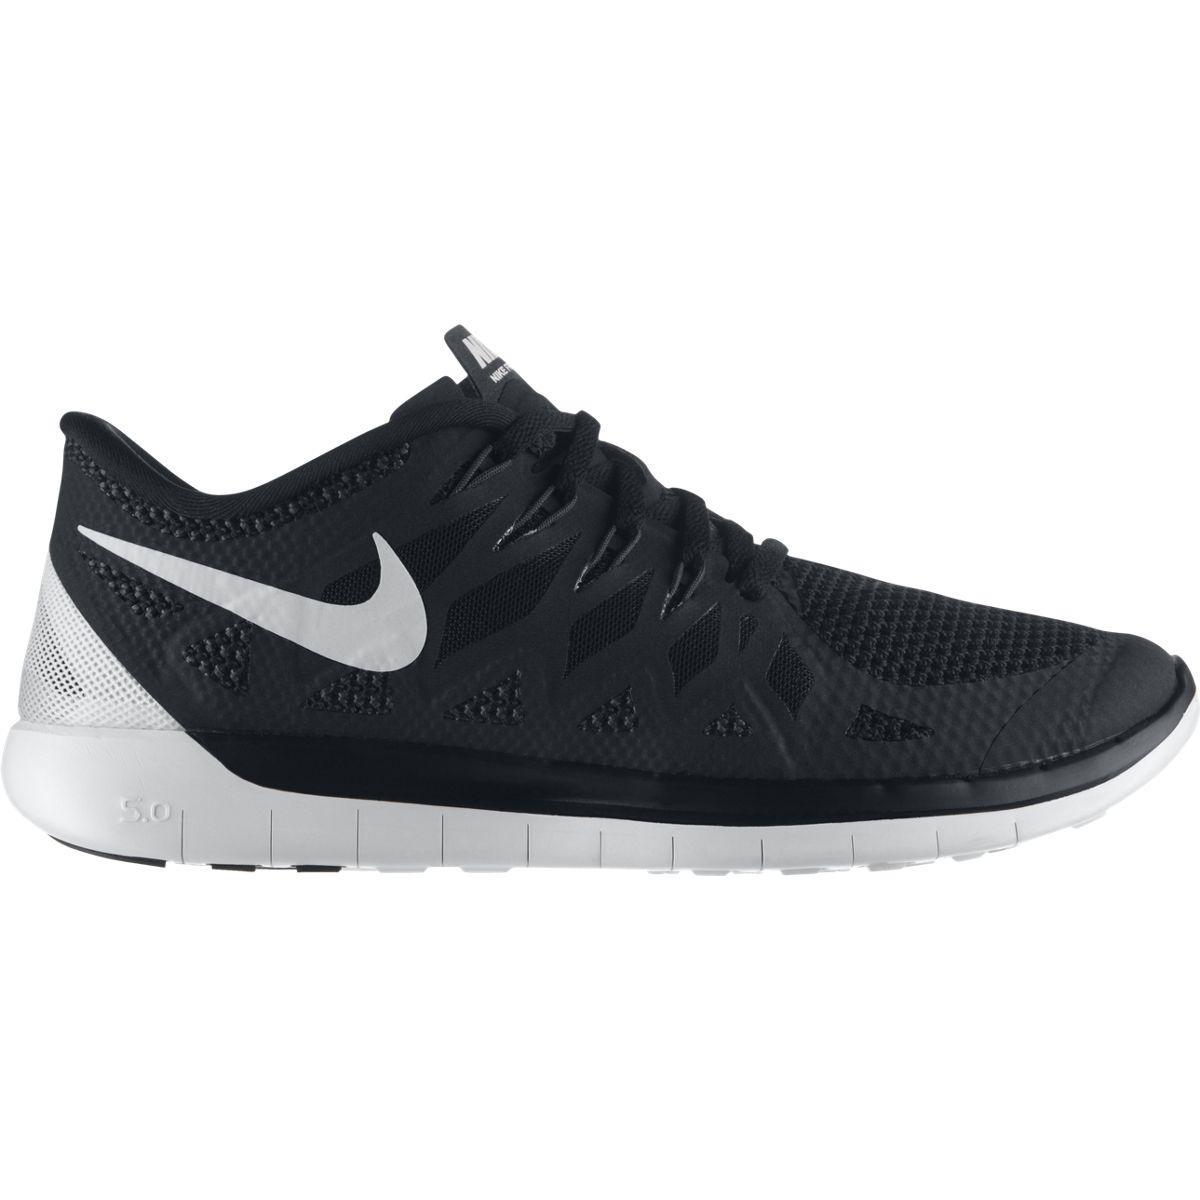 Nike Mens Free 5.0+ Running Shoes - Black/White - Tennisnuts.com